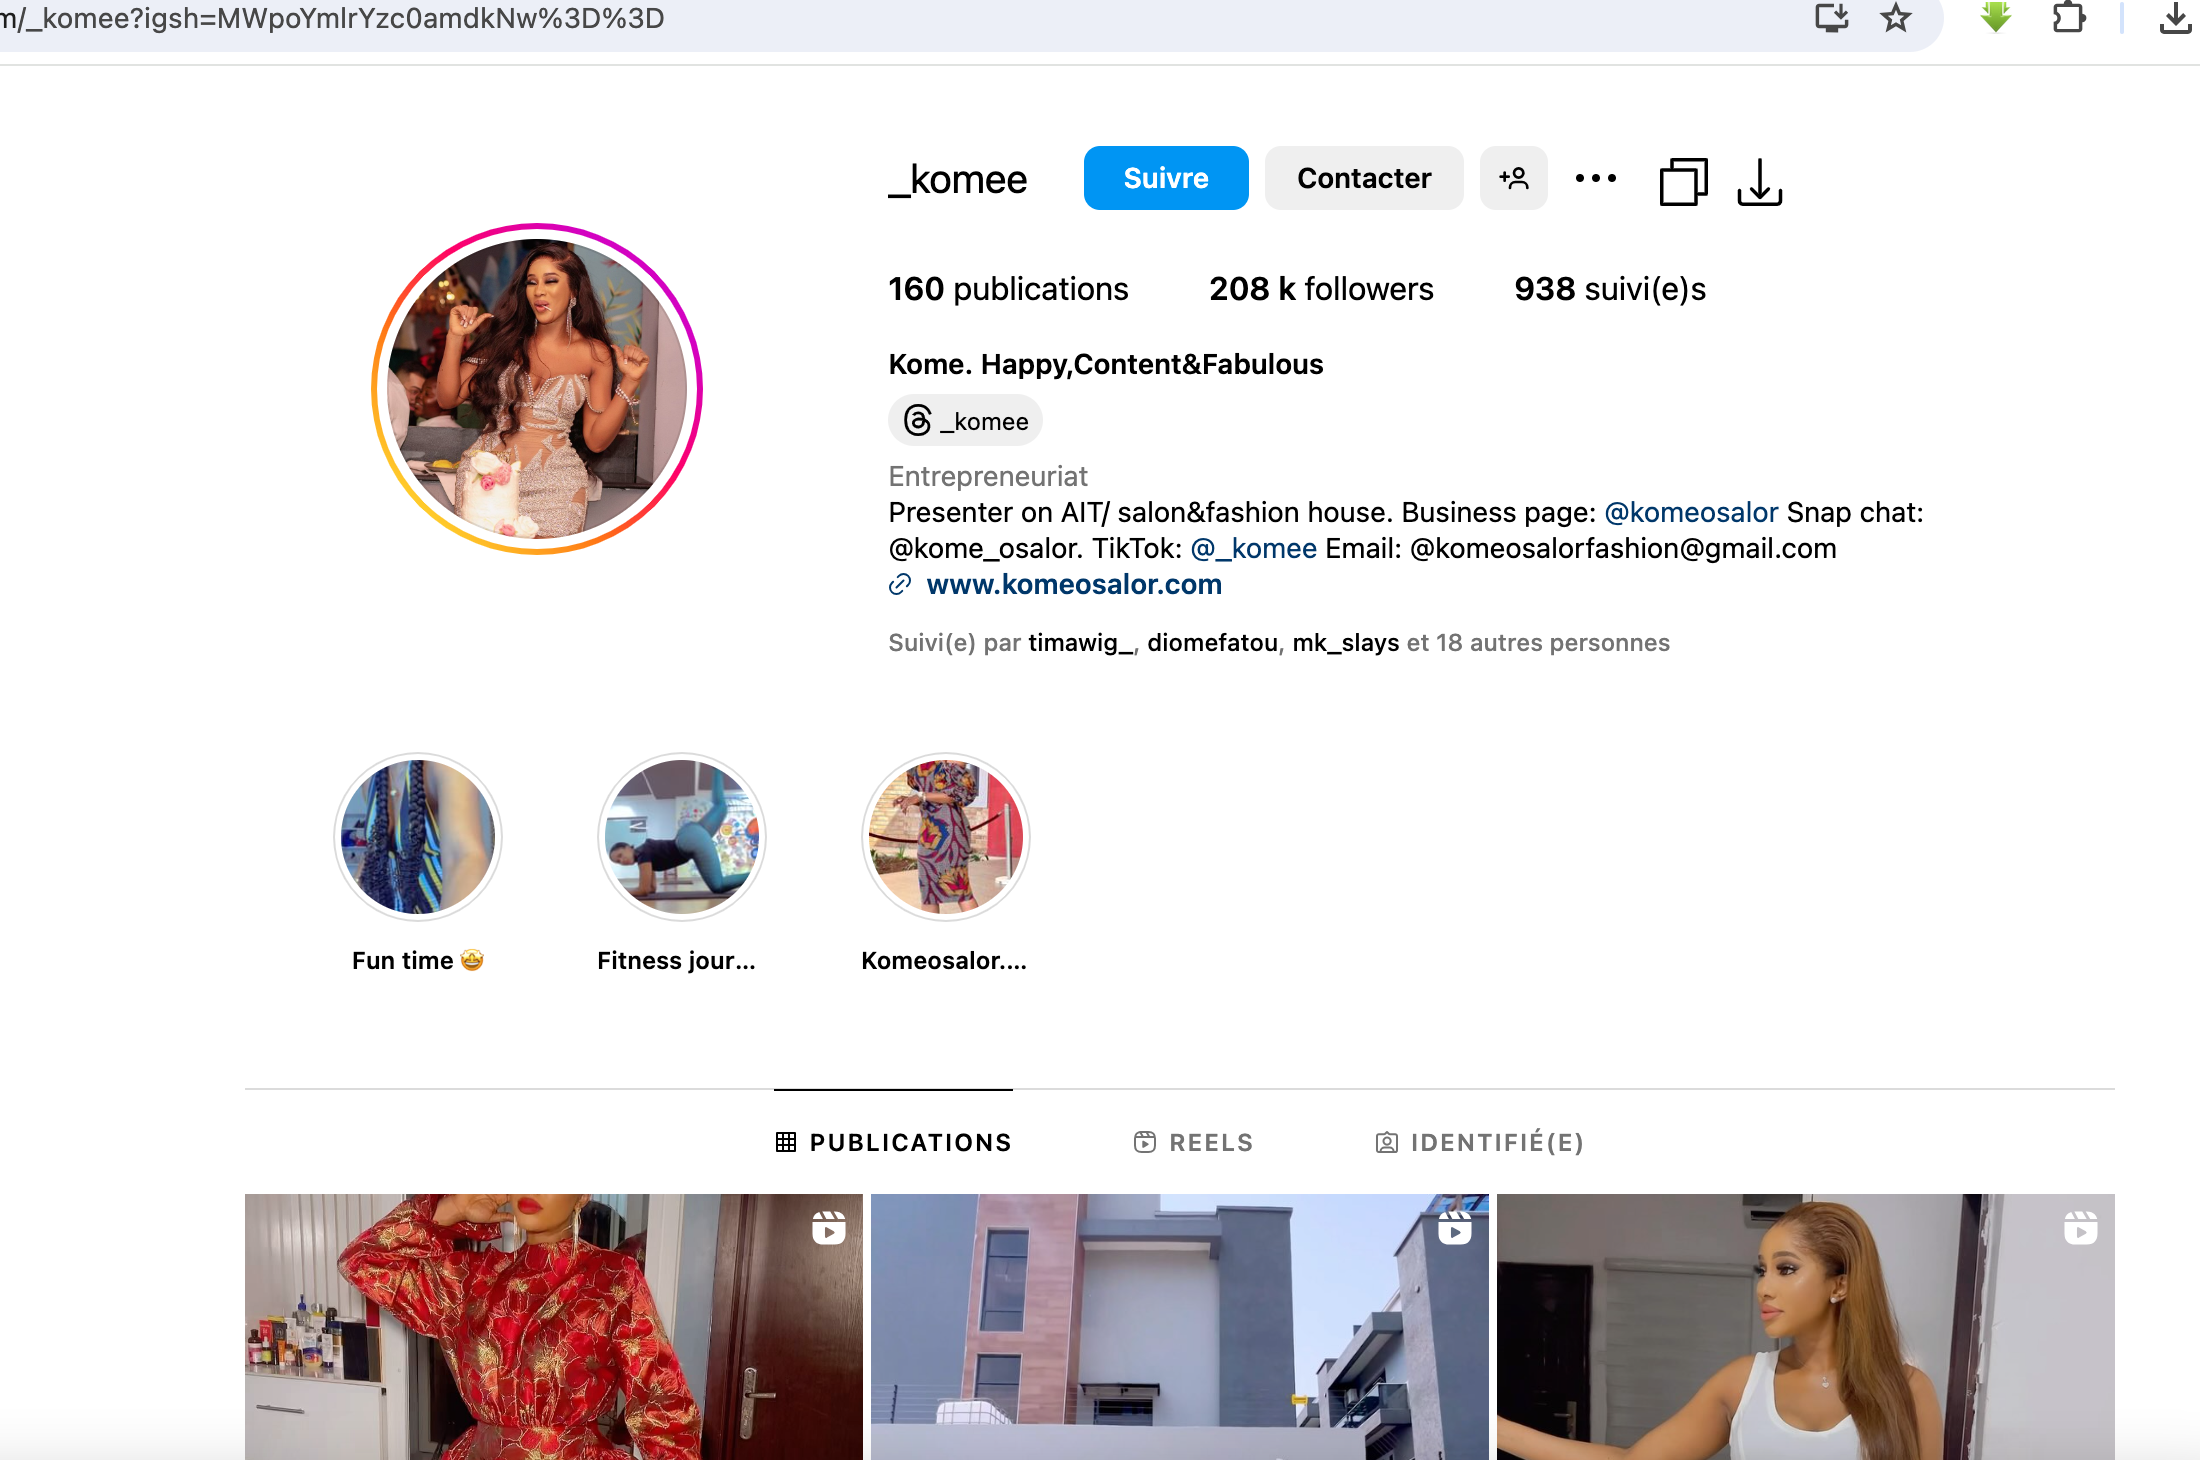 Le vrai profil de Komee compte 160 publications, 208 000 followers et est actif sur plusieurs plateformes, notamment Instagram, où elle partage ses activités liées à l'entrepreneuriat et à la mode.